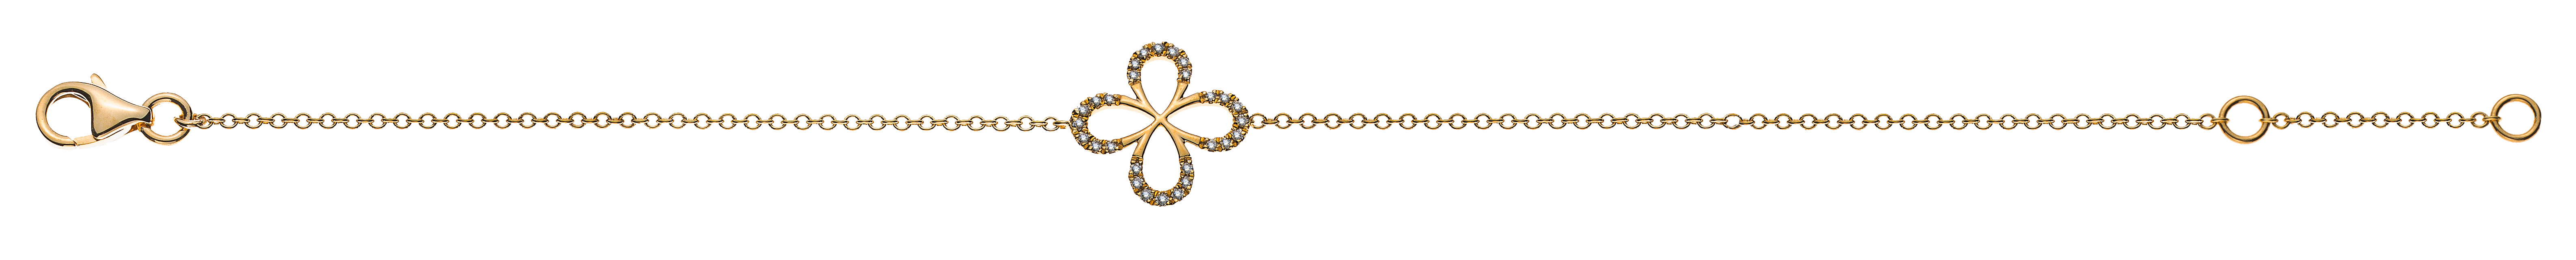 AURONOS Prestige Bracelet ancre ronde or jaune 18K diamants 0.09ct 19cm